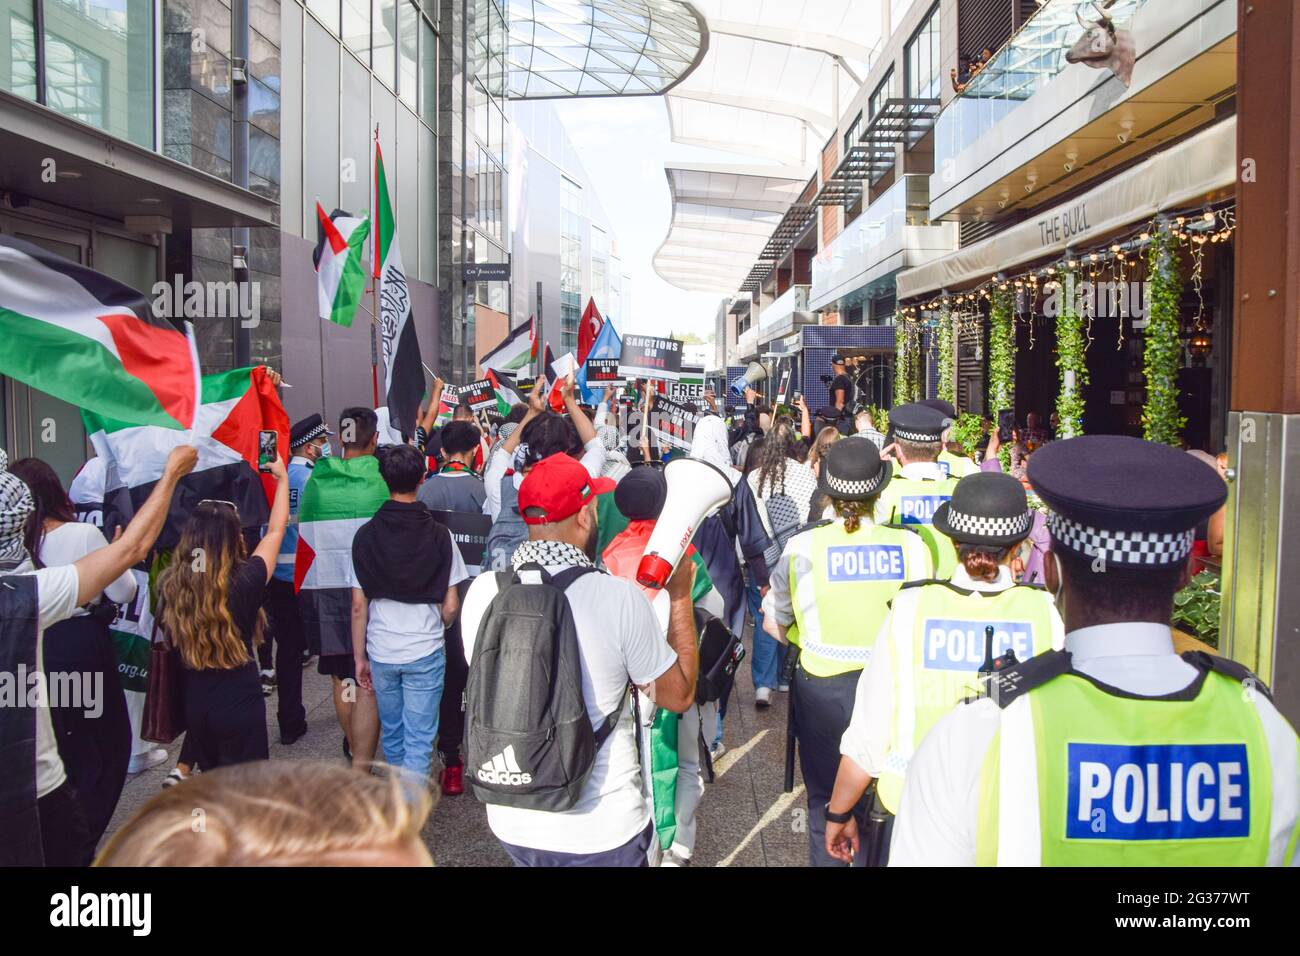 Londra, Regno Unito. 12 giugno 2021. Giustizia per la Palestina protesta al Westfield Shopping Centre di Shepherd's Bush. Migliaia di persone hanno marciato a Londra per chiedere giustizia alla Palestina e chiedere al G7 di porre fine alla cooperazione militare con Israele e di imporre sanzioni. Foto Stock